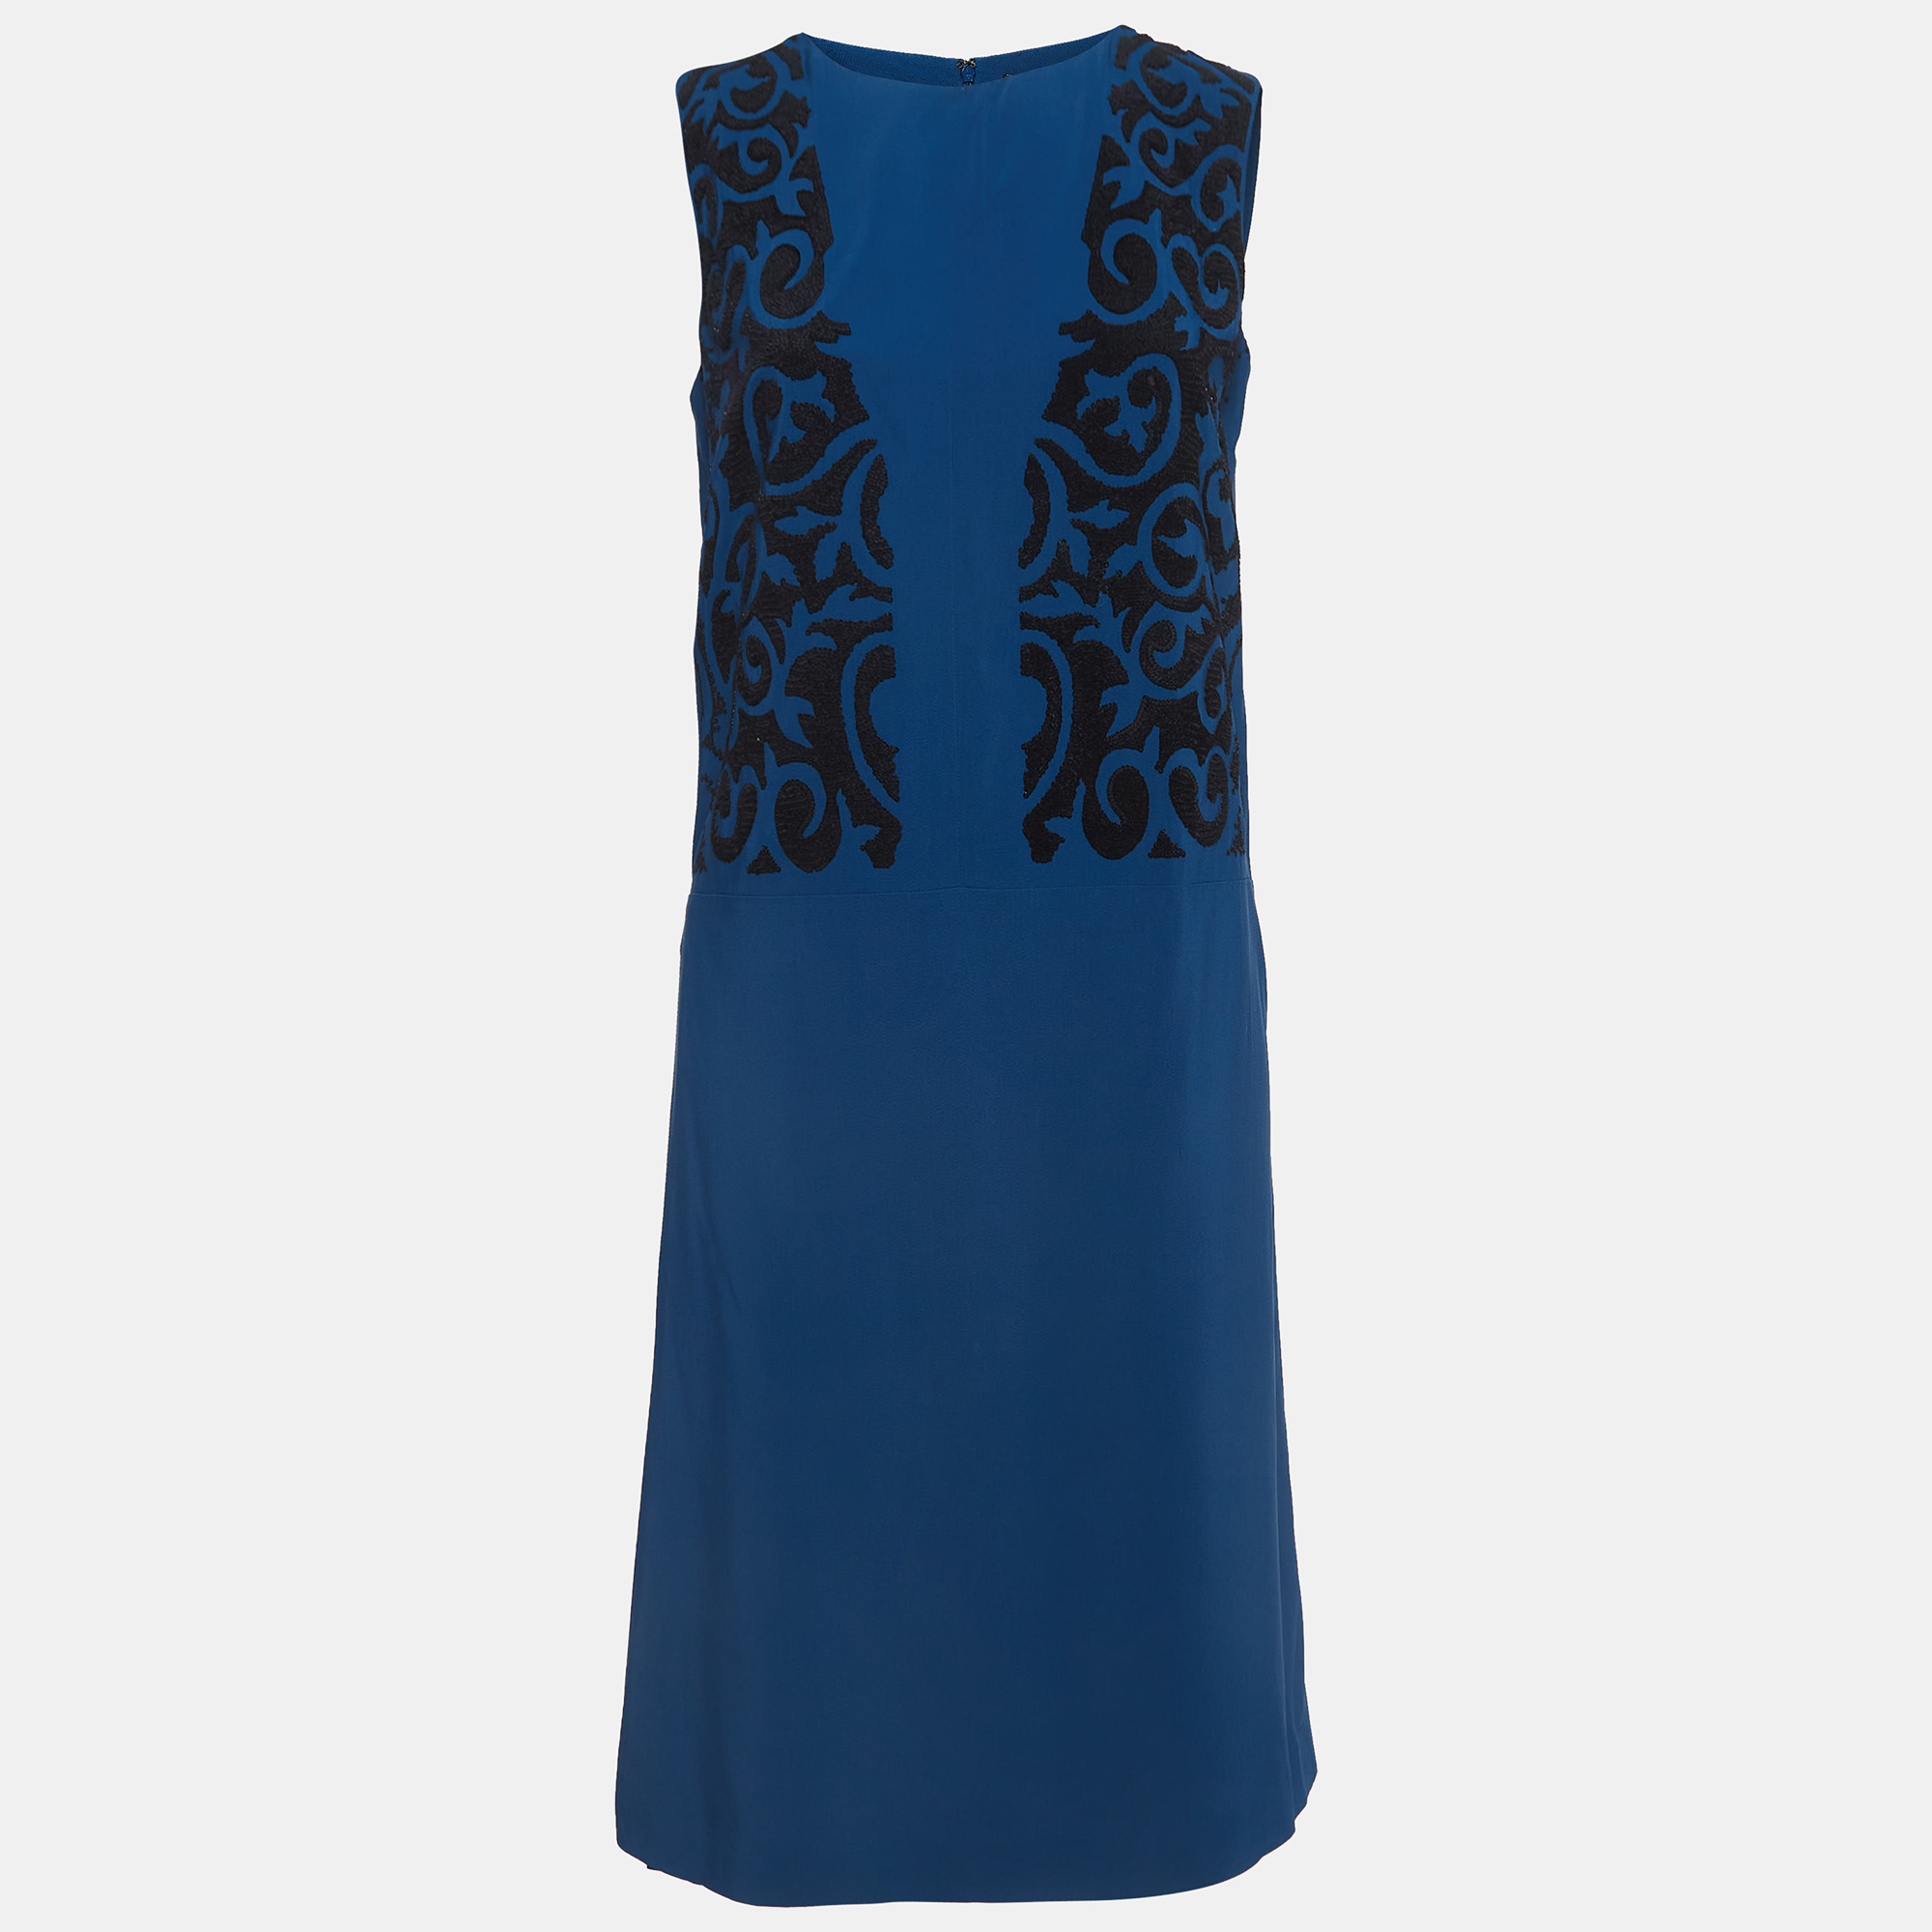 Etro blue embellished sleeveless shirt dress s